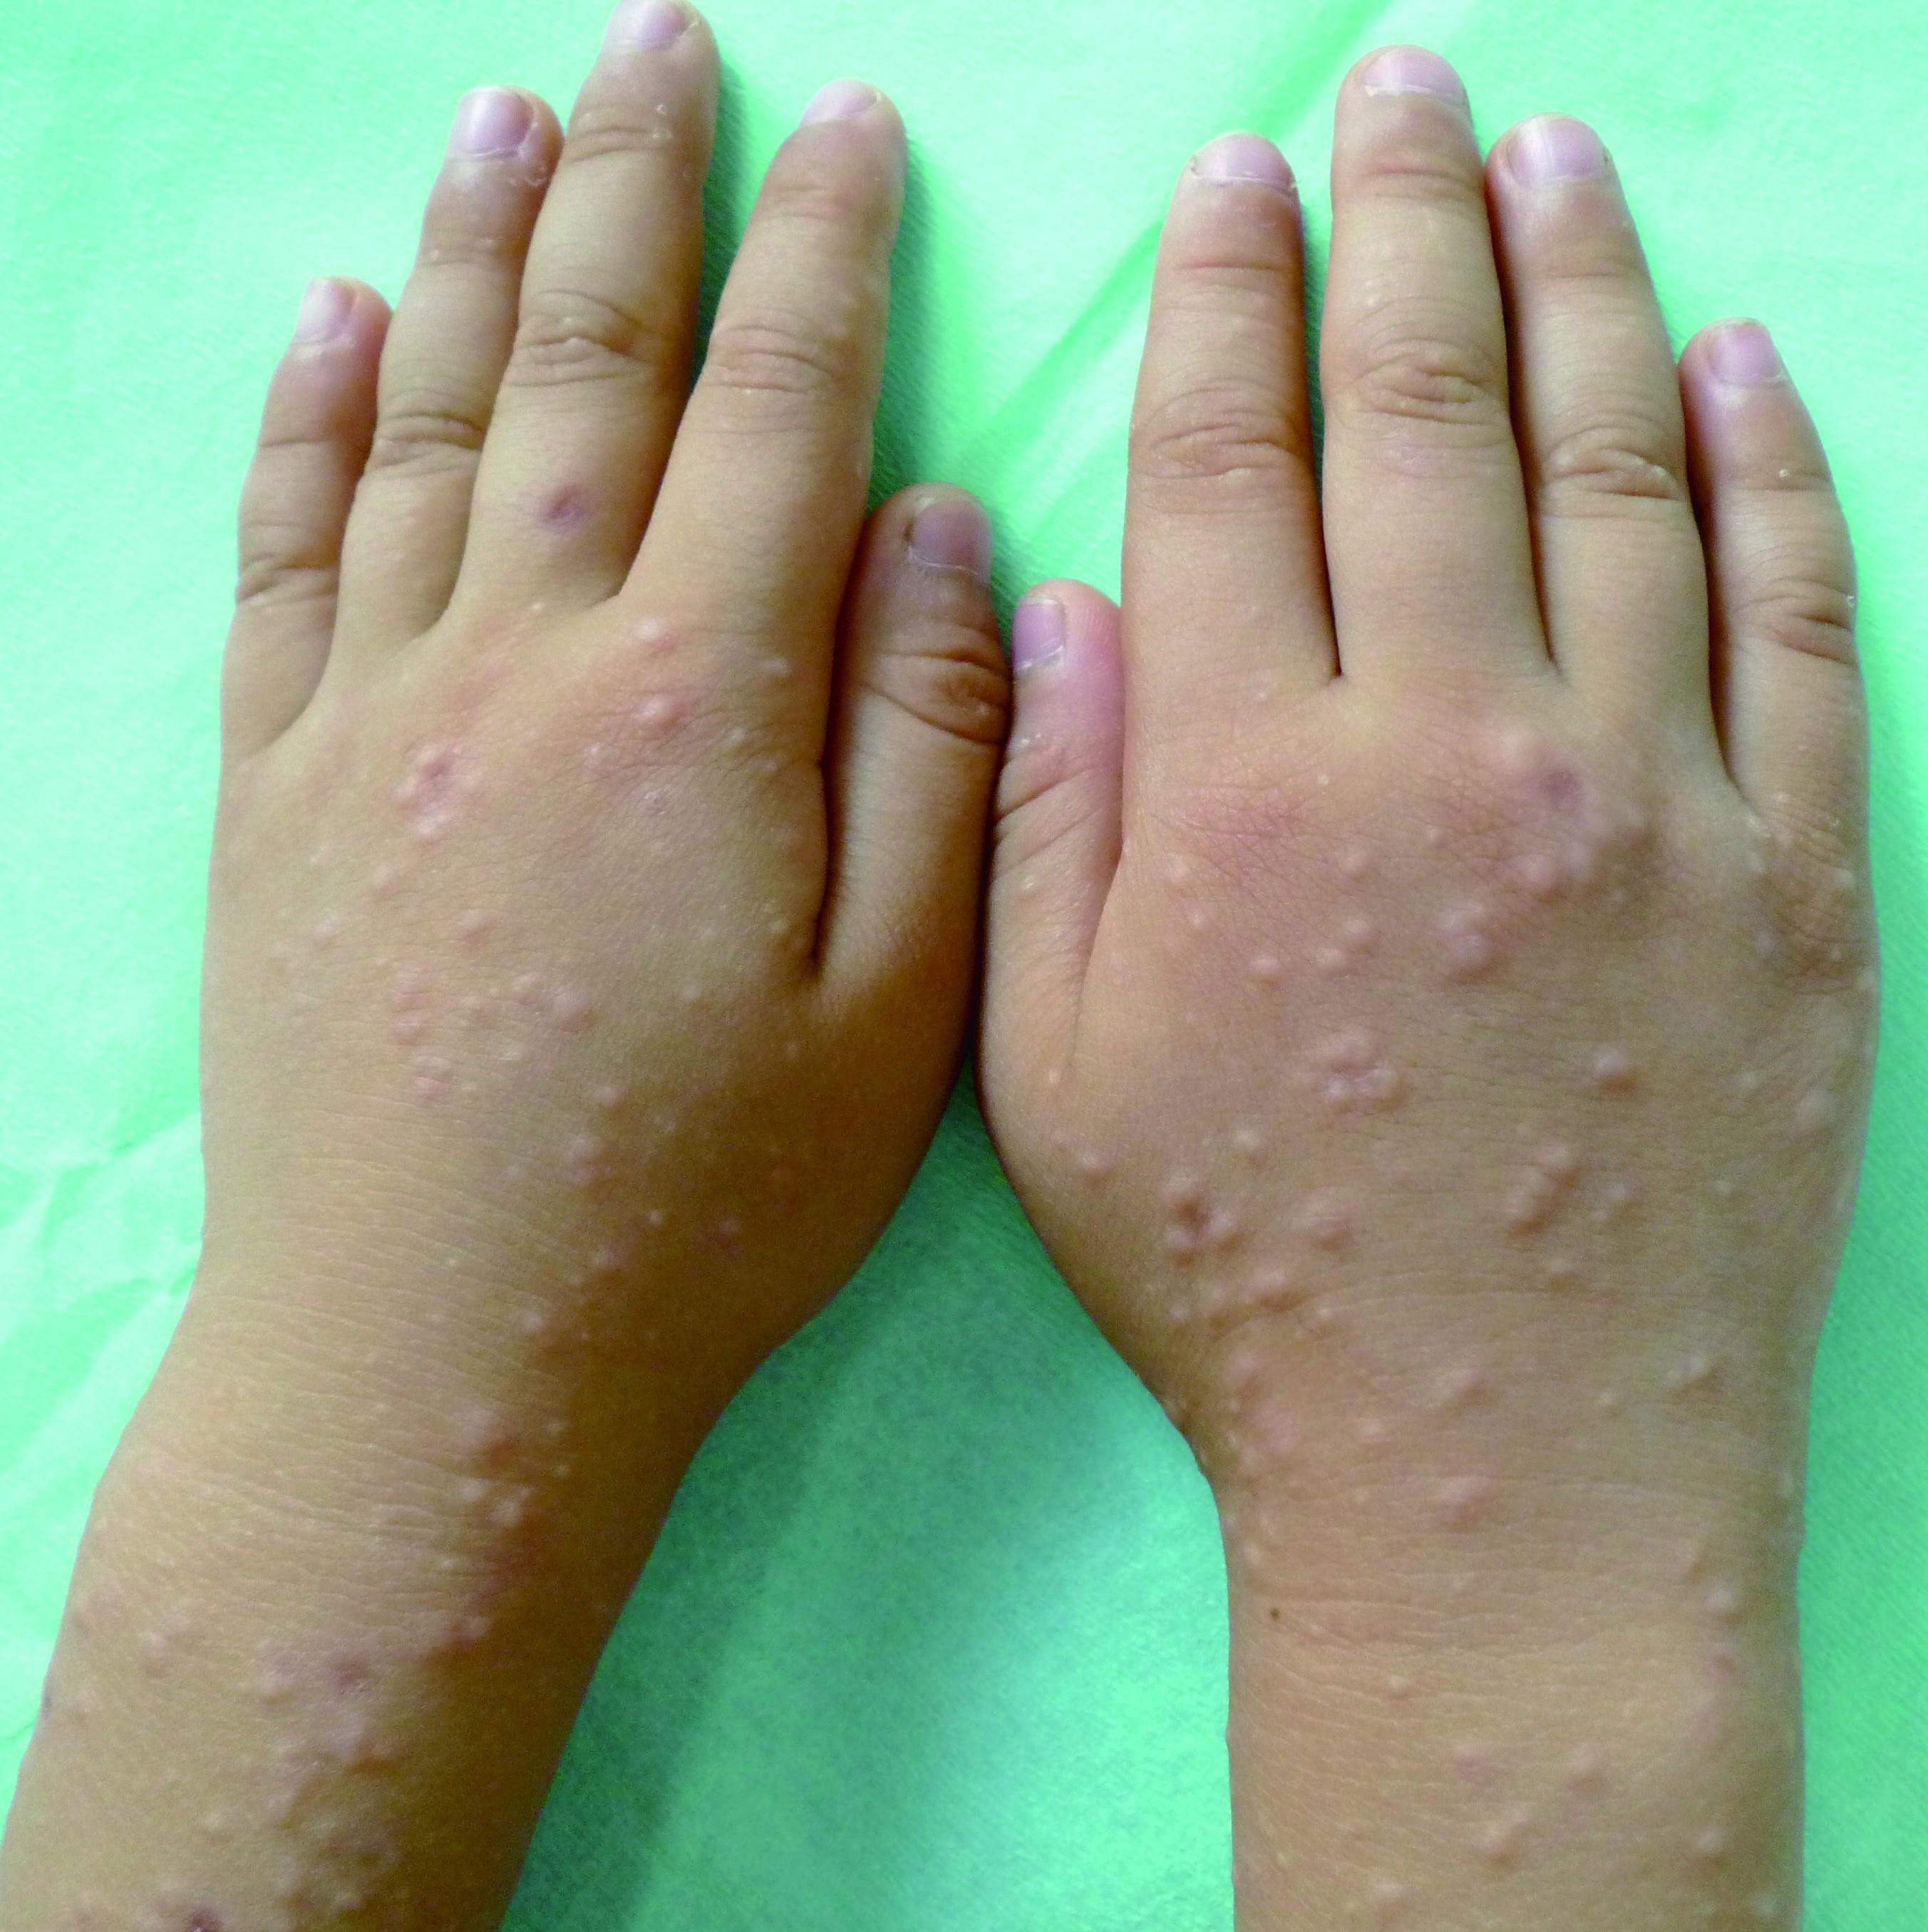 儿童丘疹性肢端皮炎症状图 儿童丘疹性肢端皮炎病例图 皮肤性病科图谱